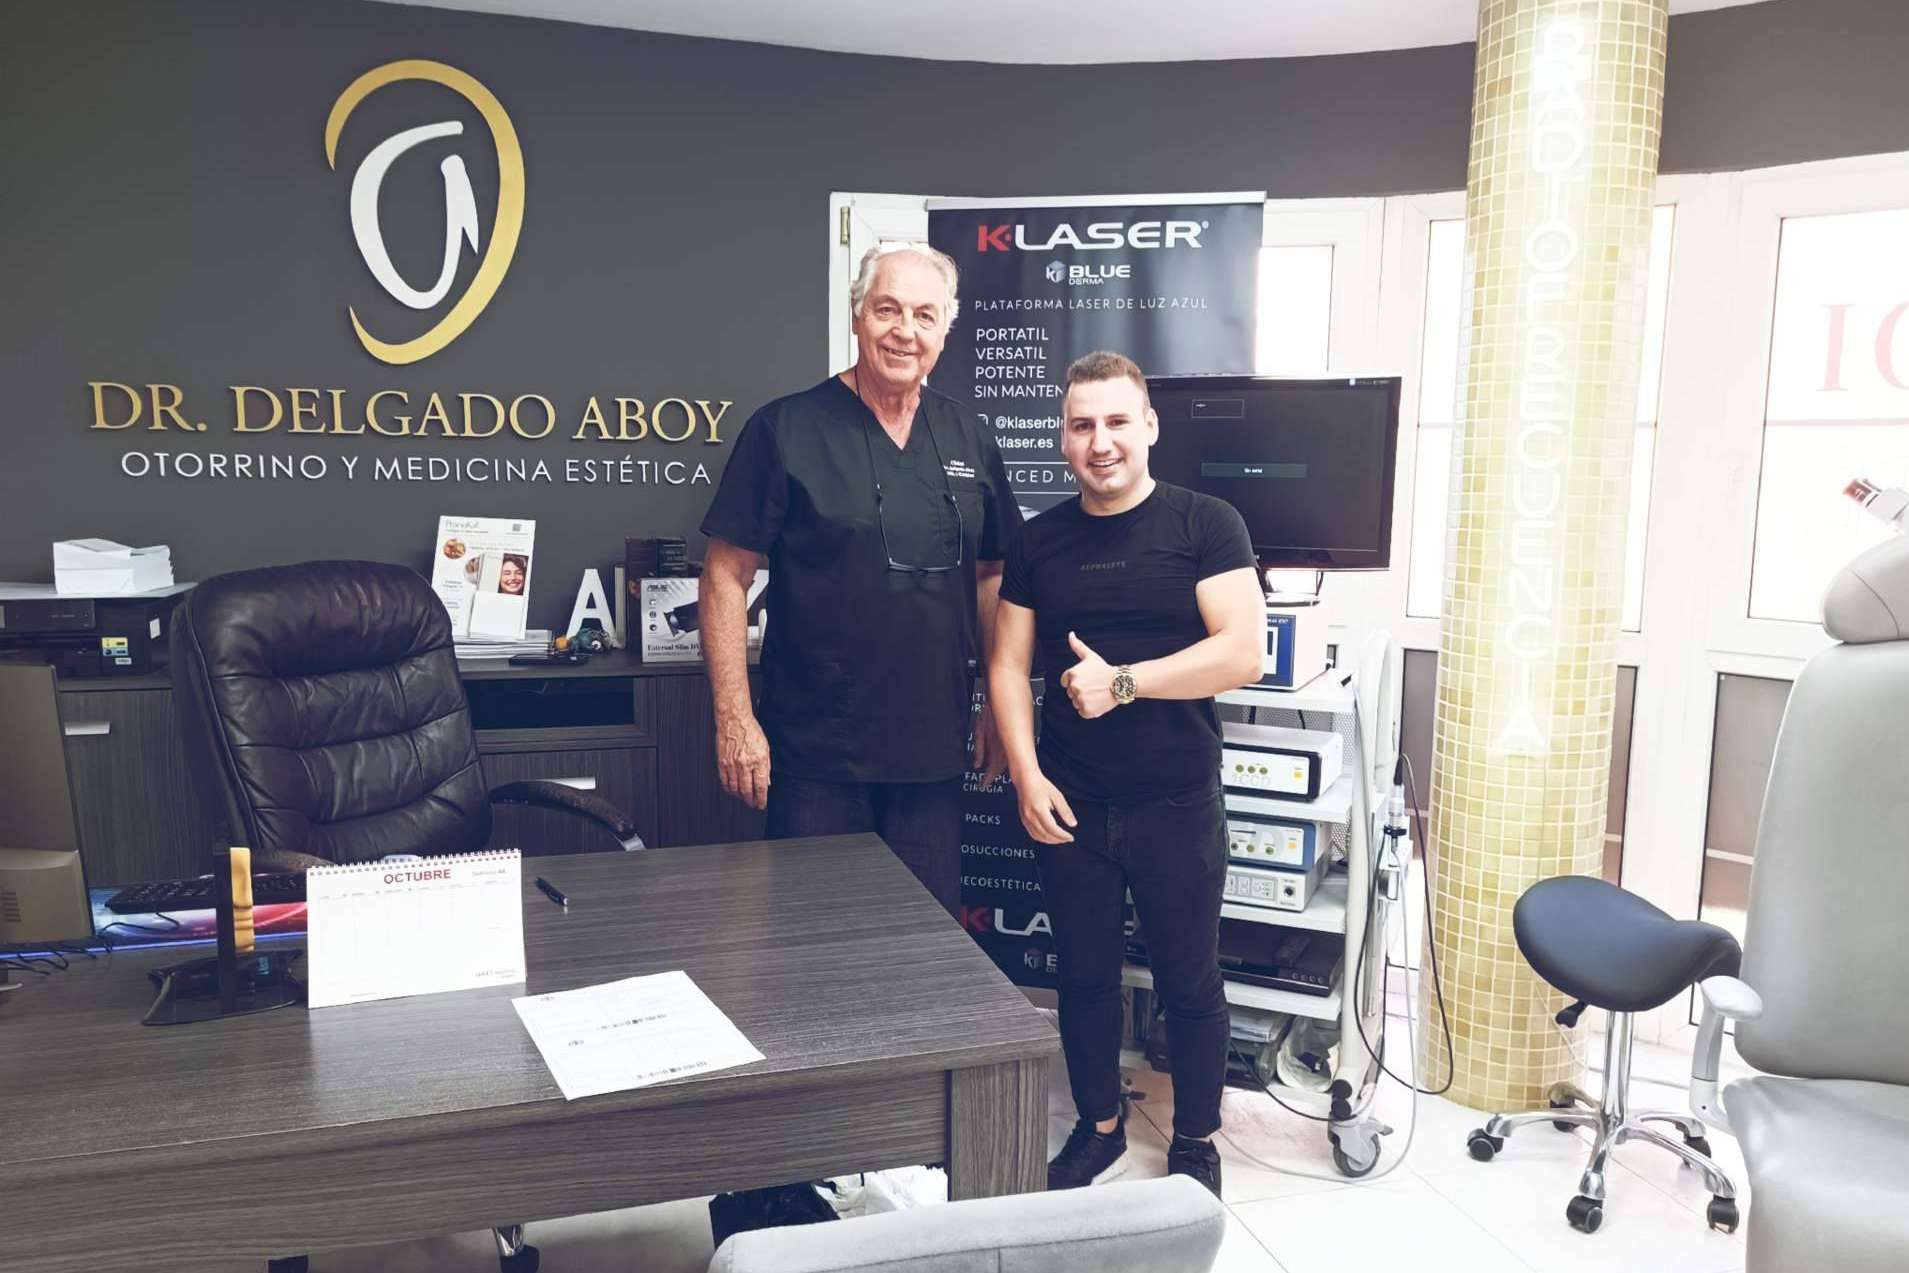  OSCAR PEREZ MADOLELL, conocido artísticamente como DJ Oscar, acude al especialista Jesús Francisco Delgado Aboy, otorrinolaringólogo, para una reducción de cornetes sin cirugía en Melilla 